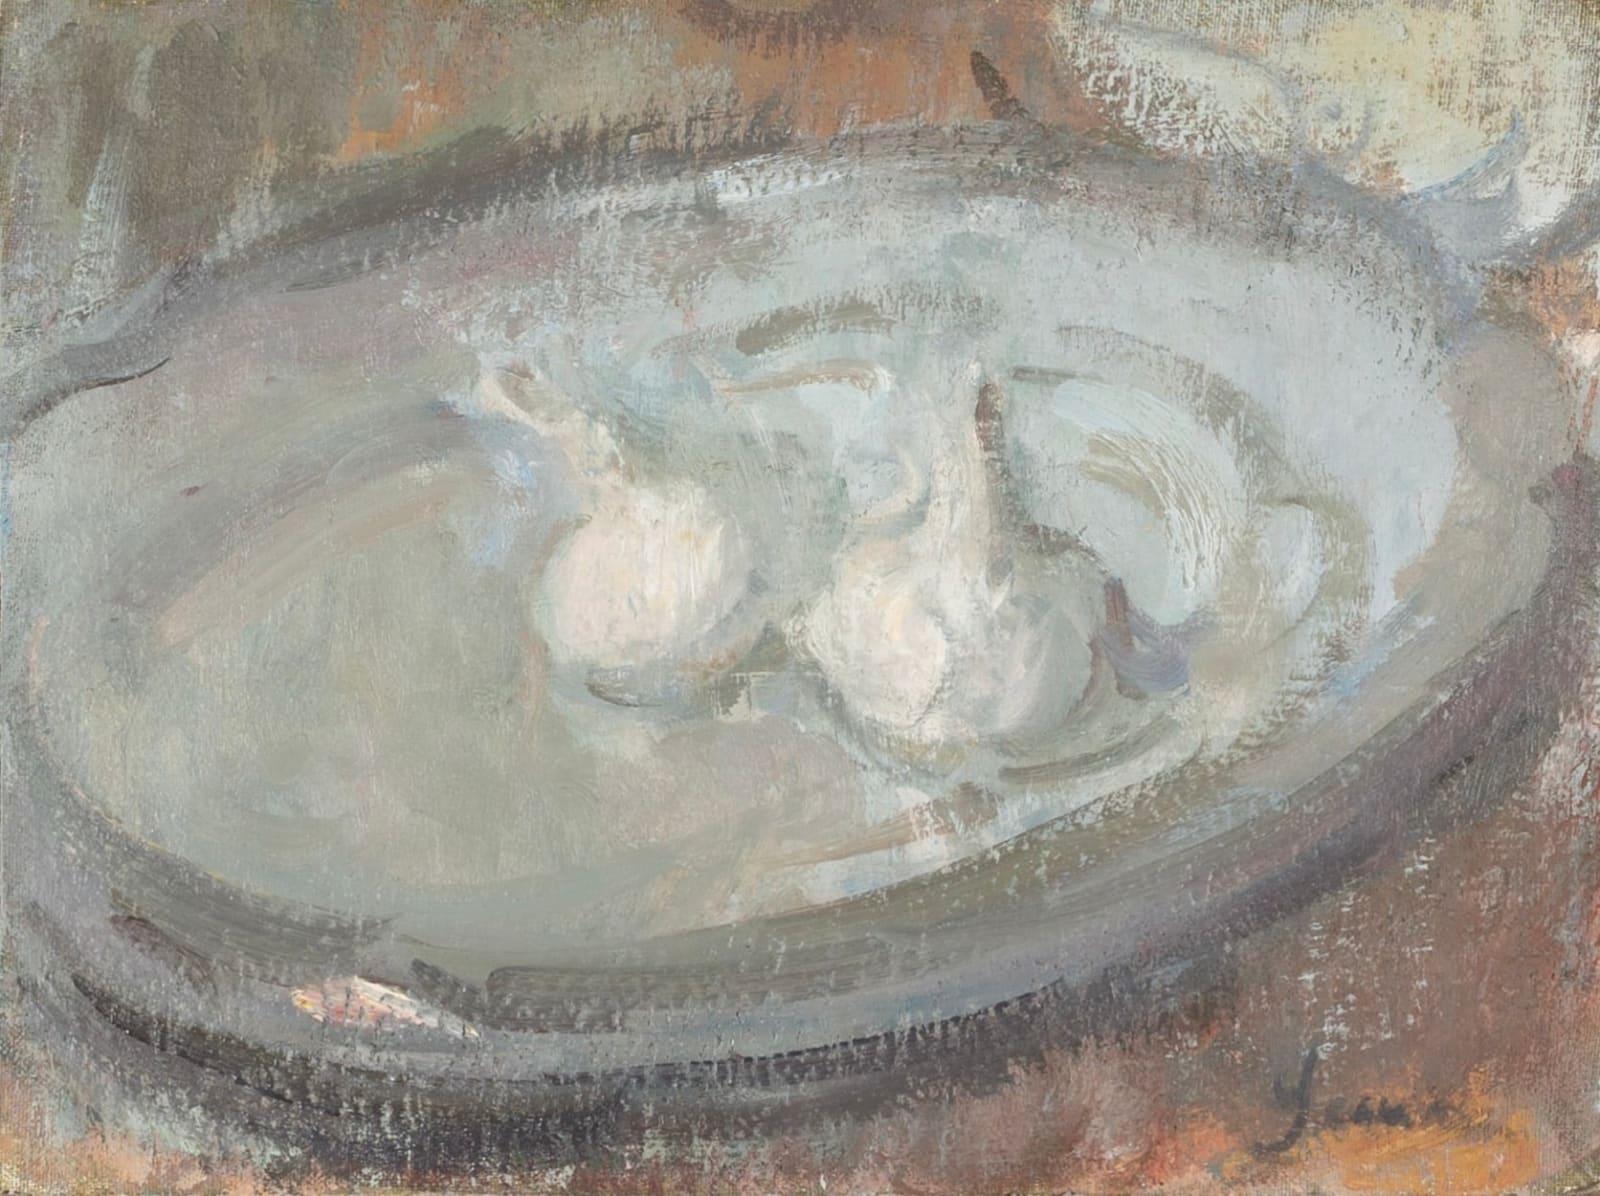 Zwei Knoblauch auf französischem Teller Gemälde von Martin Yeoman B. 1953, 2016

Zusätzliche Informationen:
Medium: Öl auf Platte
Abmessungen: 23,5 x 31 cm
9 1/4 x 12 1/4 Zoll

Martin Yeoman wurde 1953 geboren und studierte von 1975 bis 1979 bei